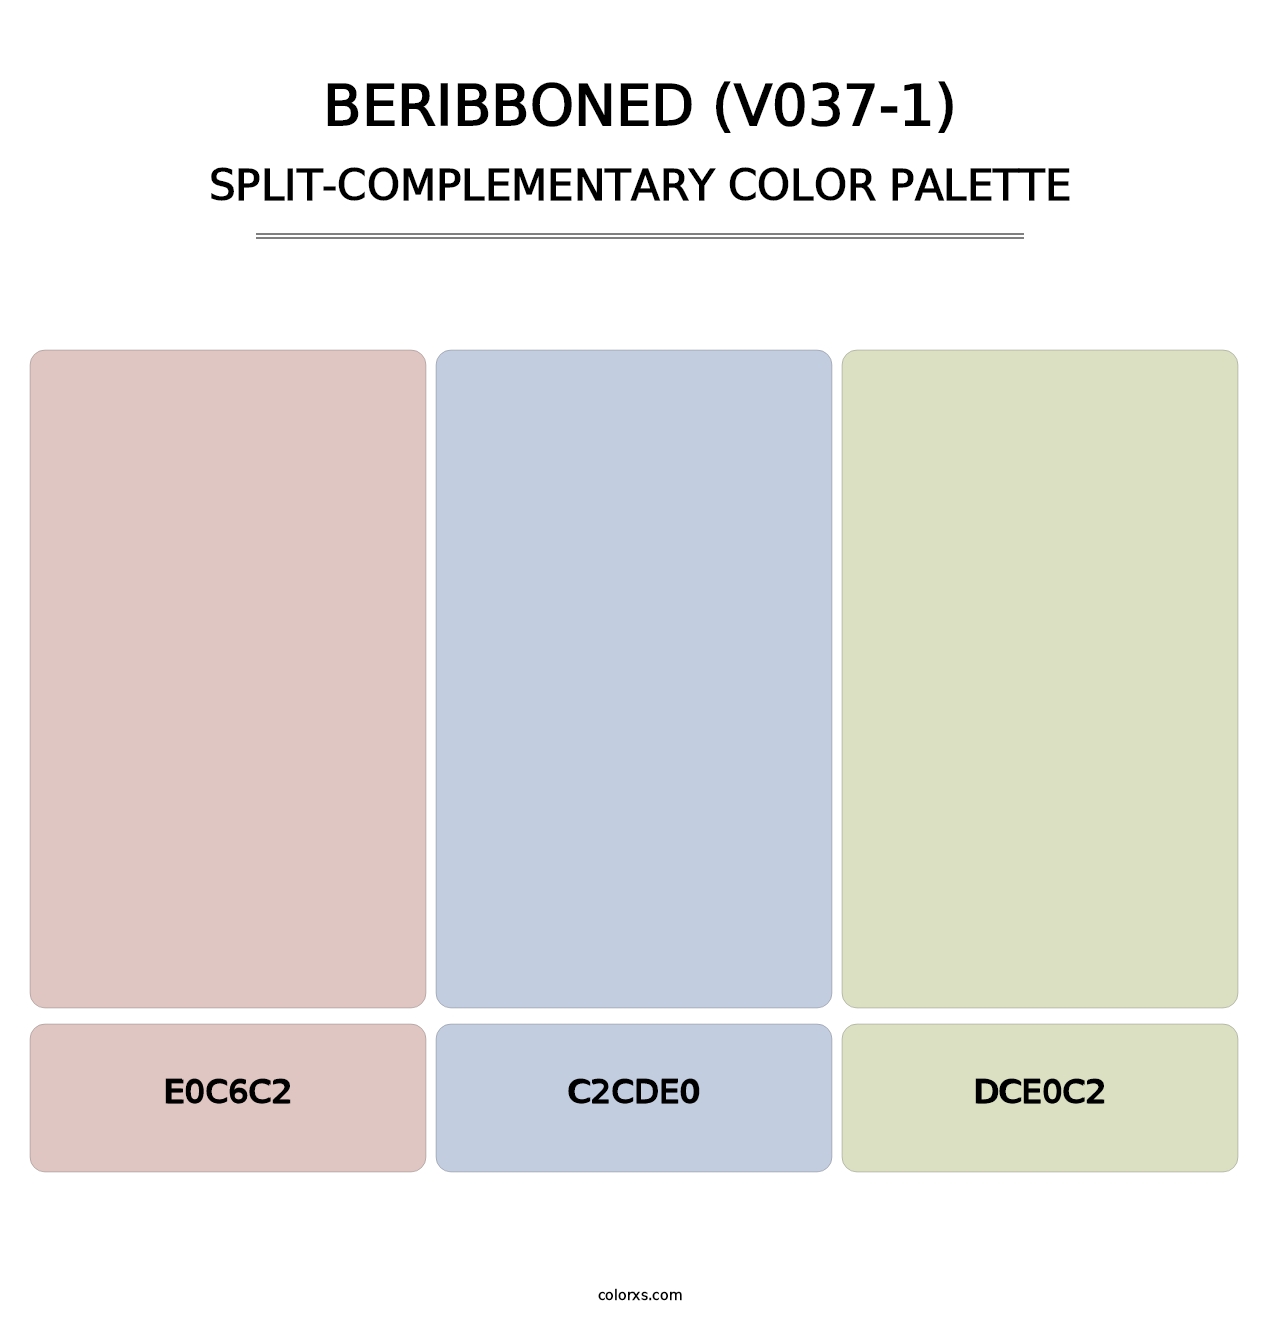 Beribboned (V037-1) - Split-Complementary Color Palette